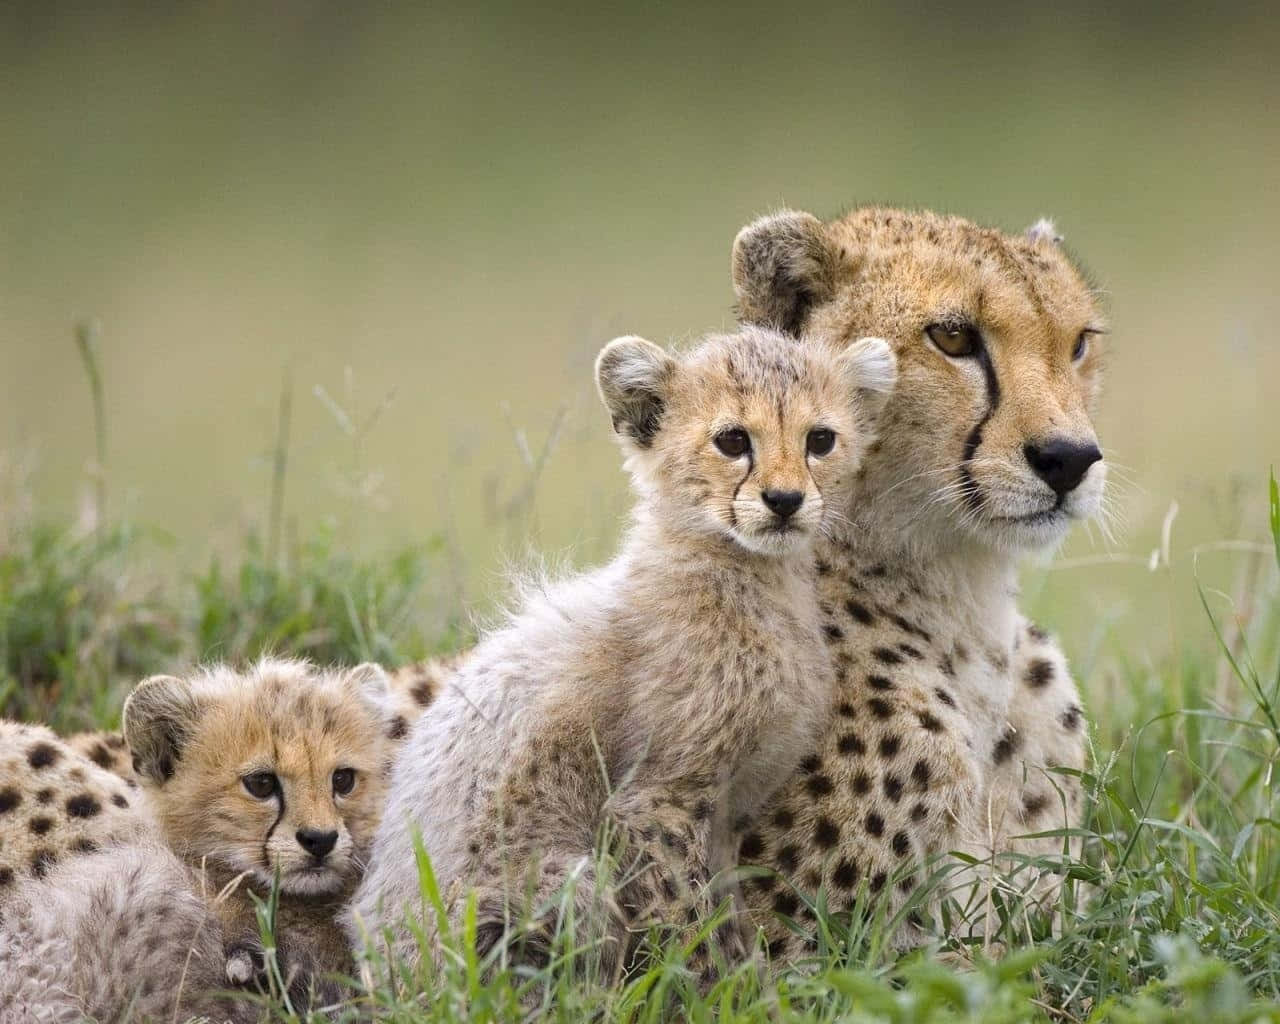 Vildadjur: Bild Av En Familj Av Geparder På Gräs